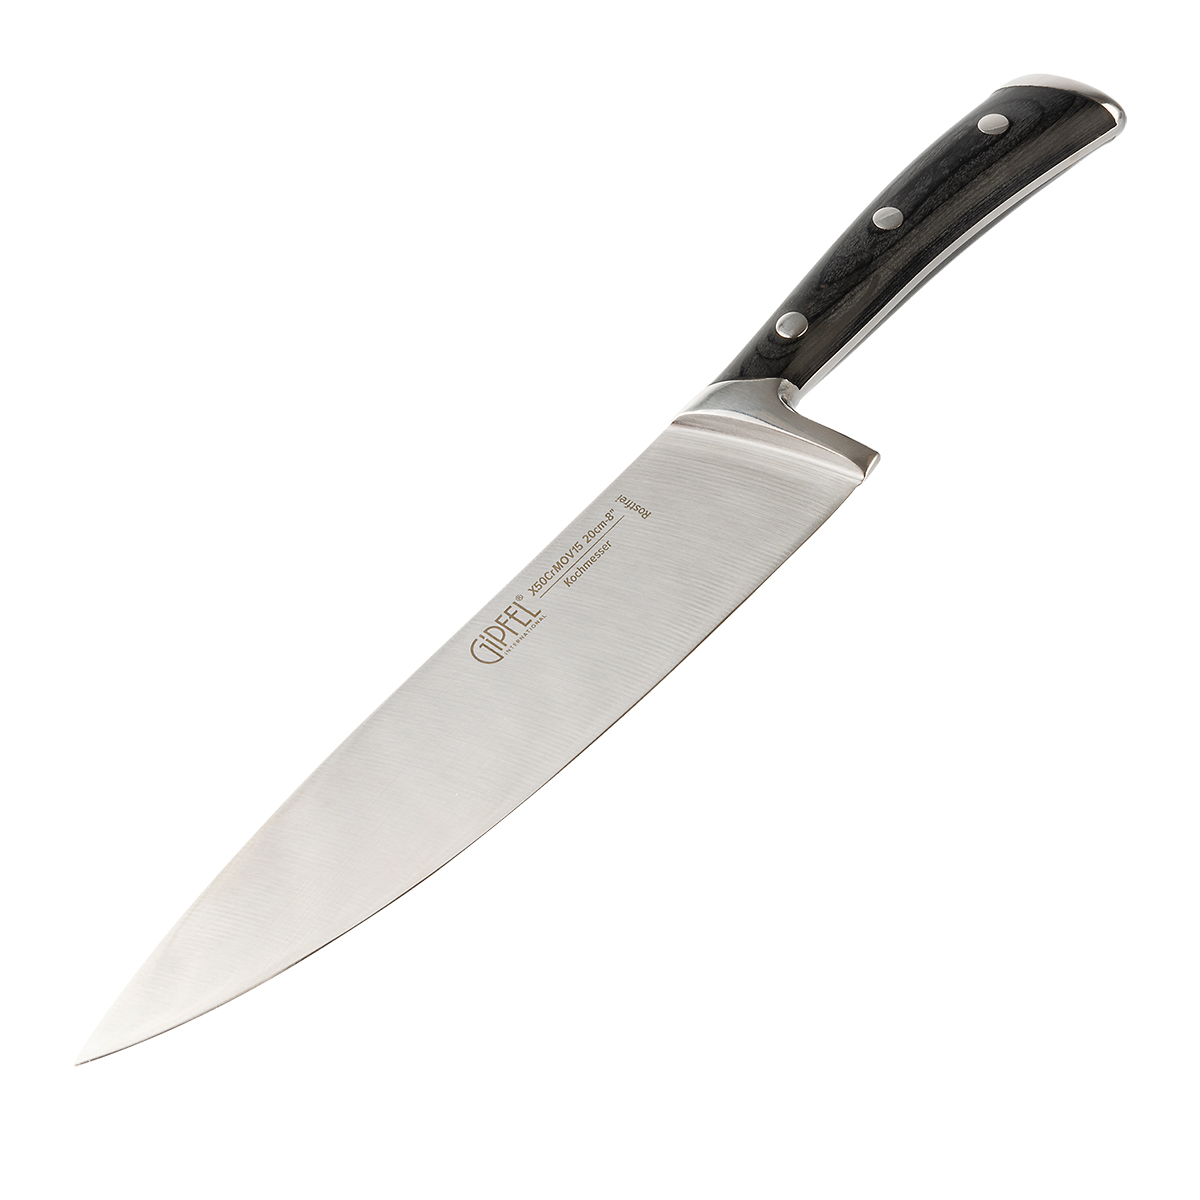 Поварской нож Gipfel Laffi Black 9927, цвет чёрное дерево